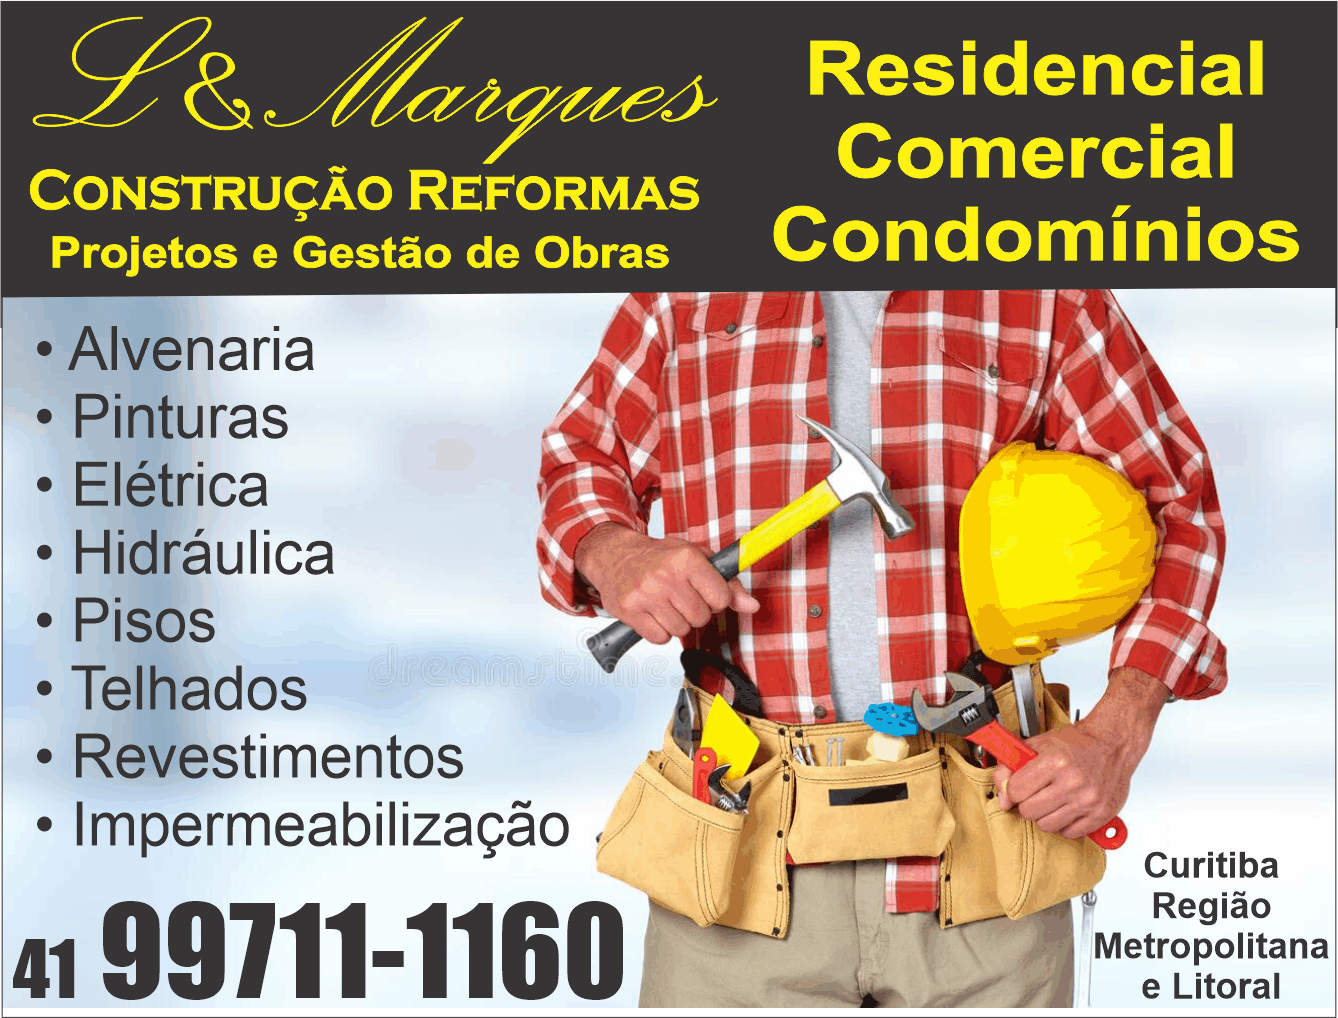 L & Marques Construções e Reformas      Fones: (41) 98875-9405 / (41) 99711-1160